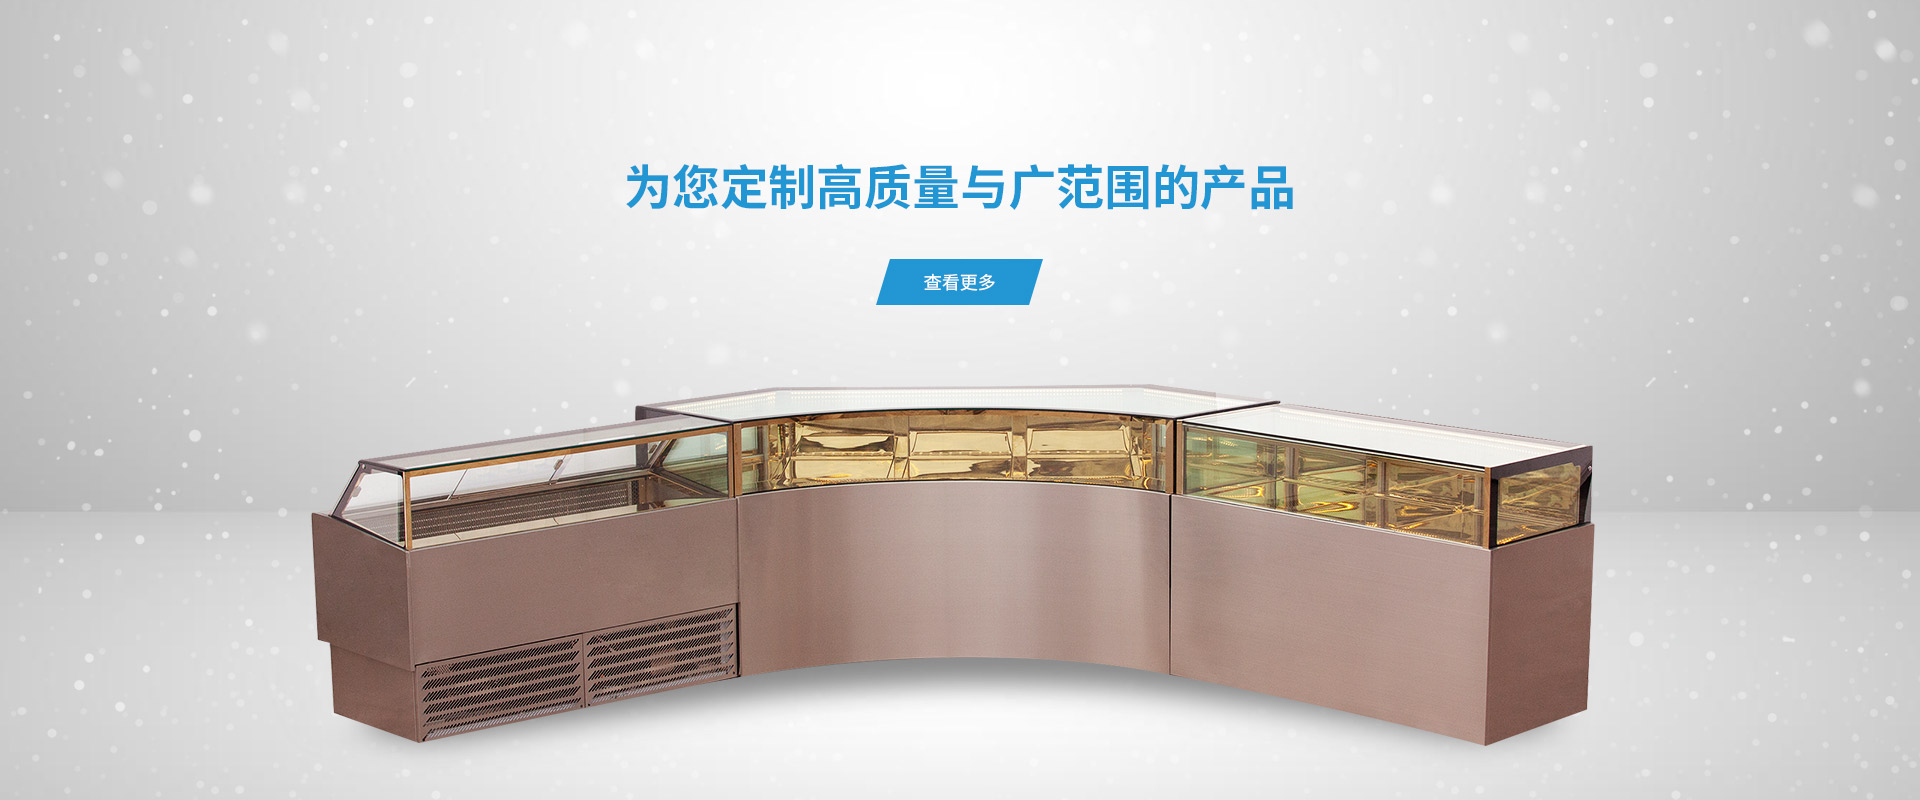 广州特立冷冻机械有限公司